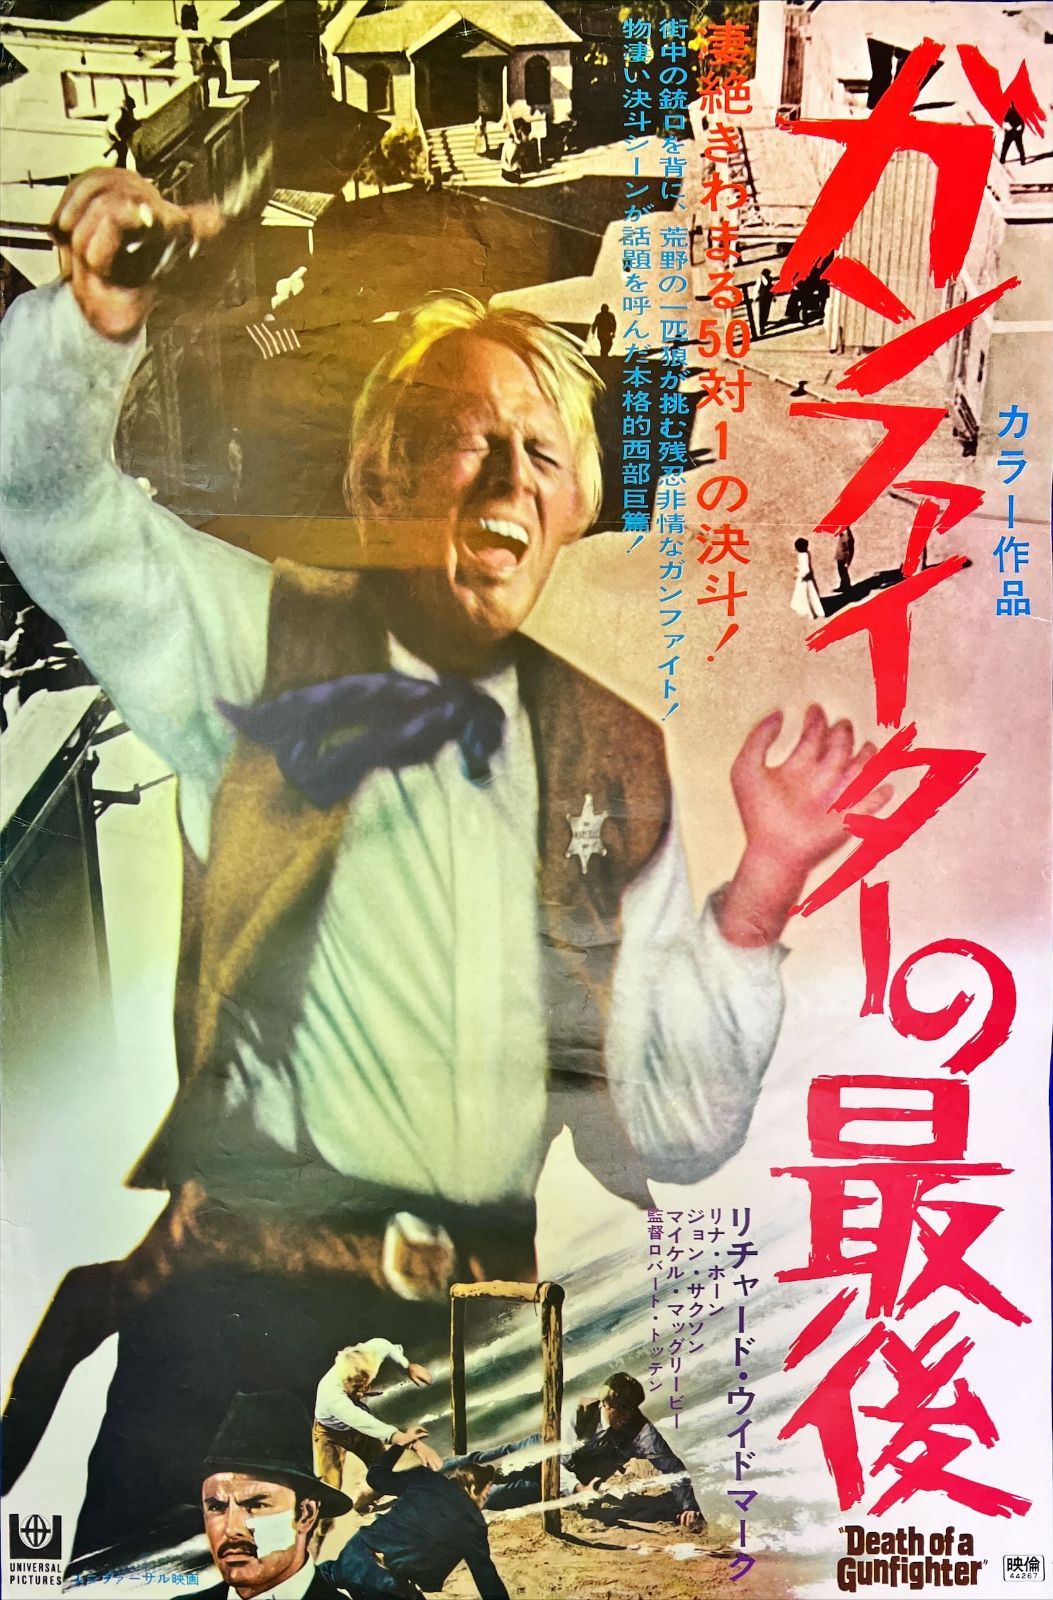 ガンファイターの最後』映画B2判オリジナルポスター - メルカリ